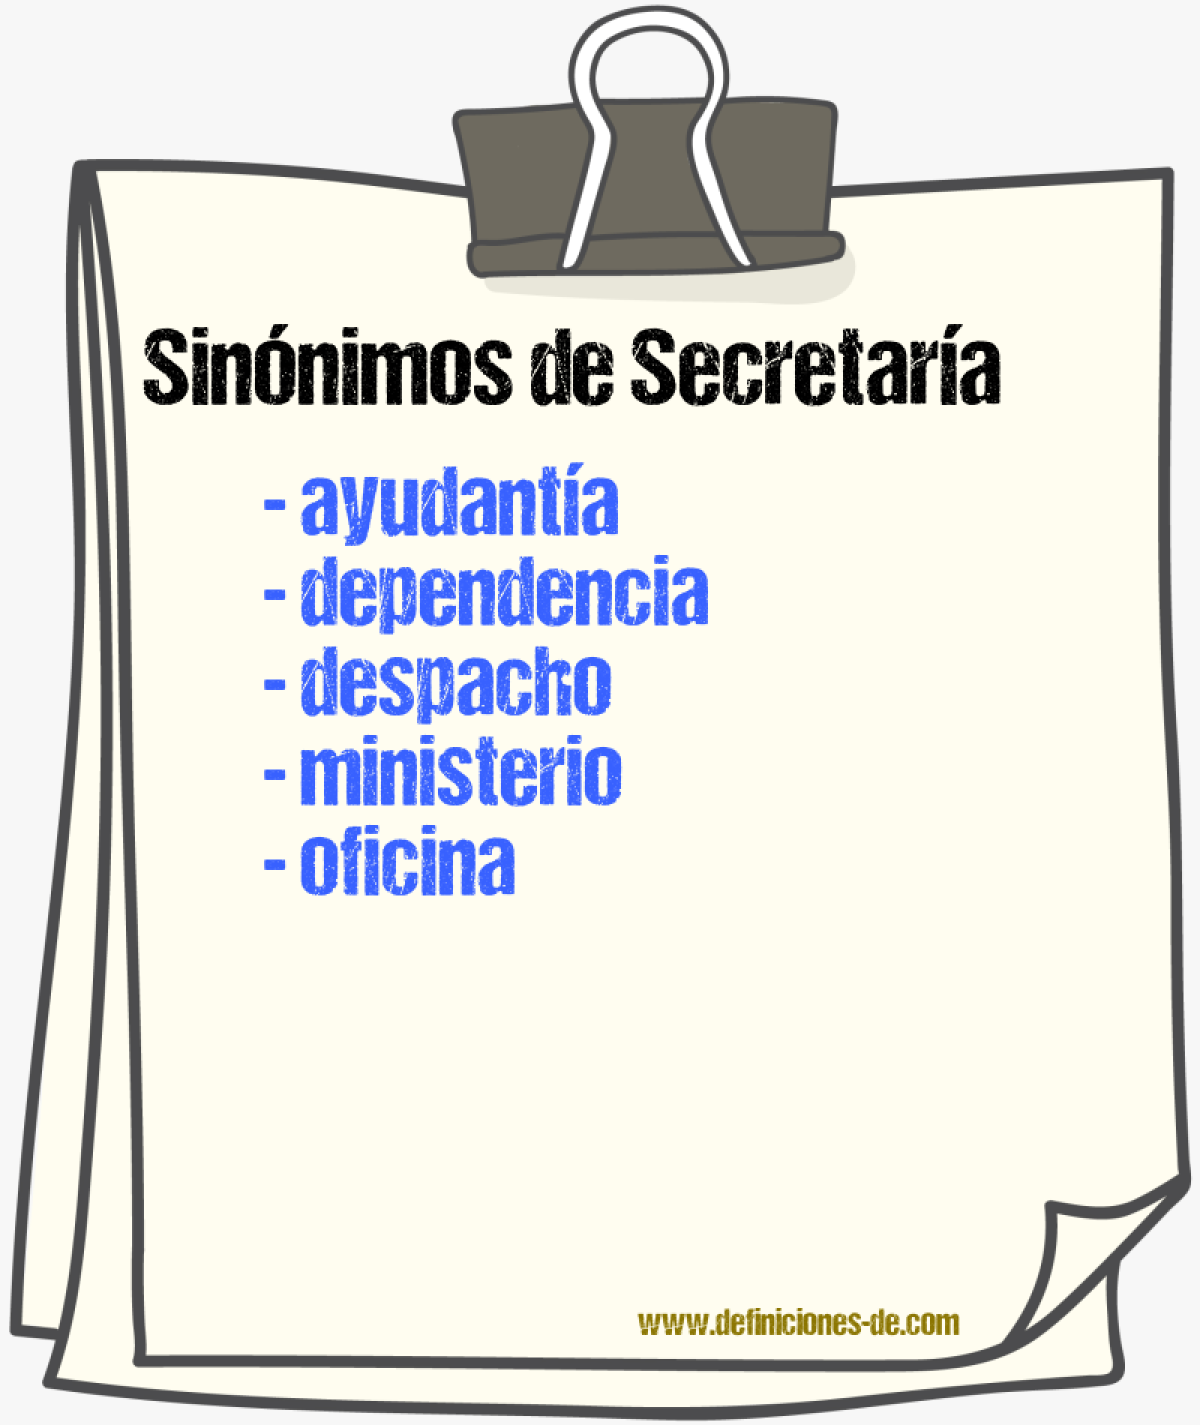 Sinónimos de secretaría